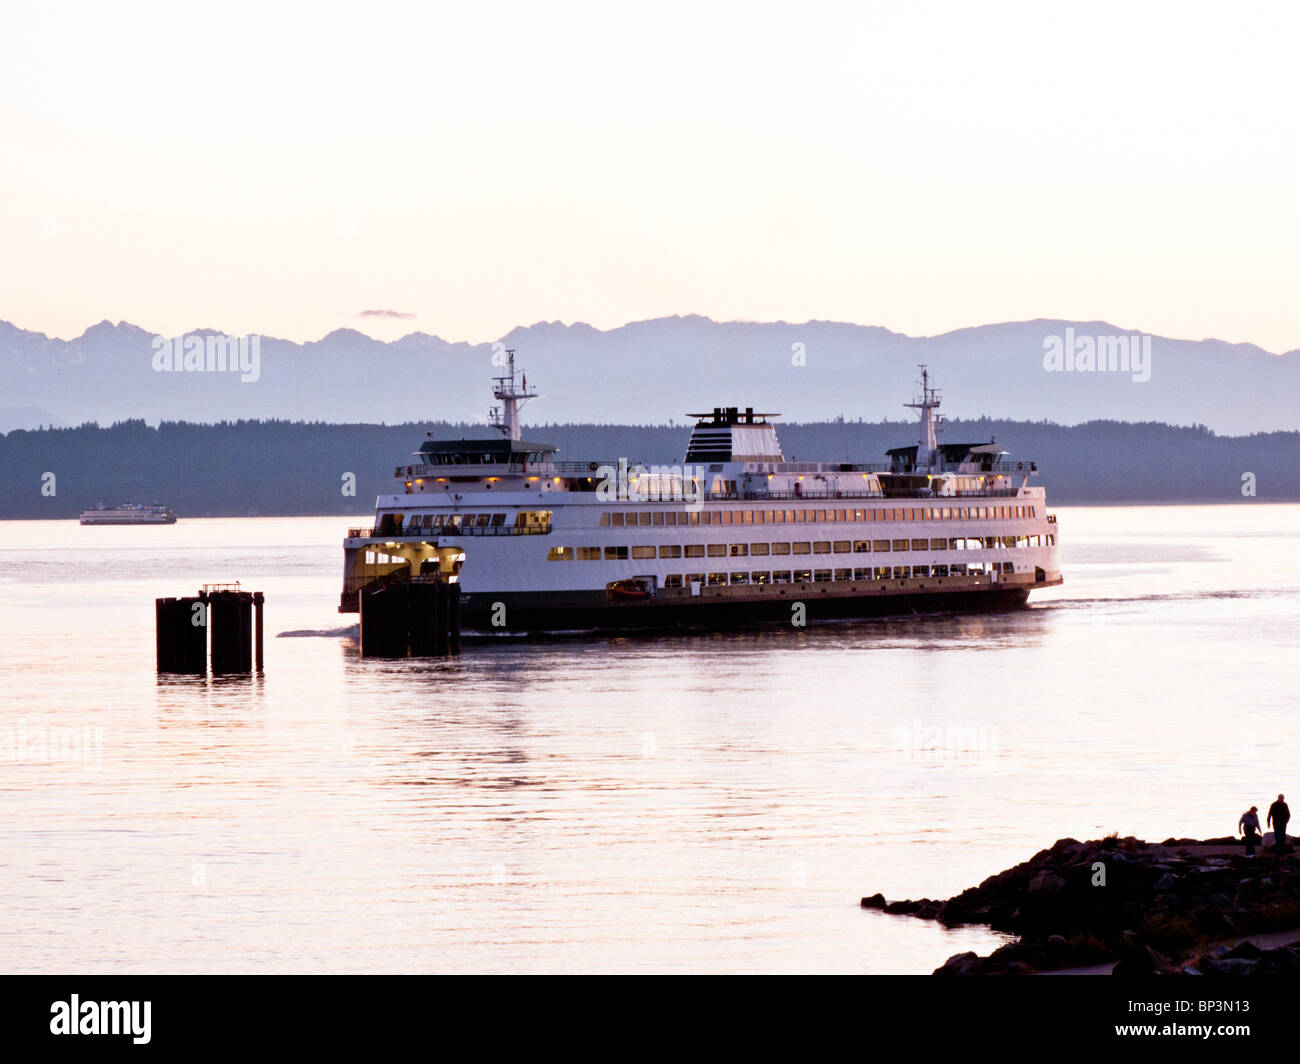 Washington State Ferry Puyallup approchant Edmonds ferry pier après le coucher du soleil sur une soirée claire Edmonds, Washington Banque D'Images